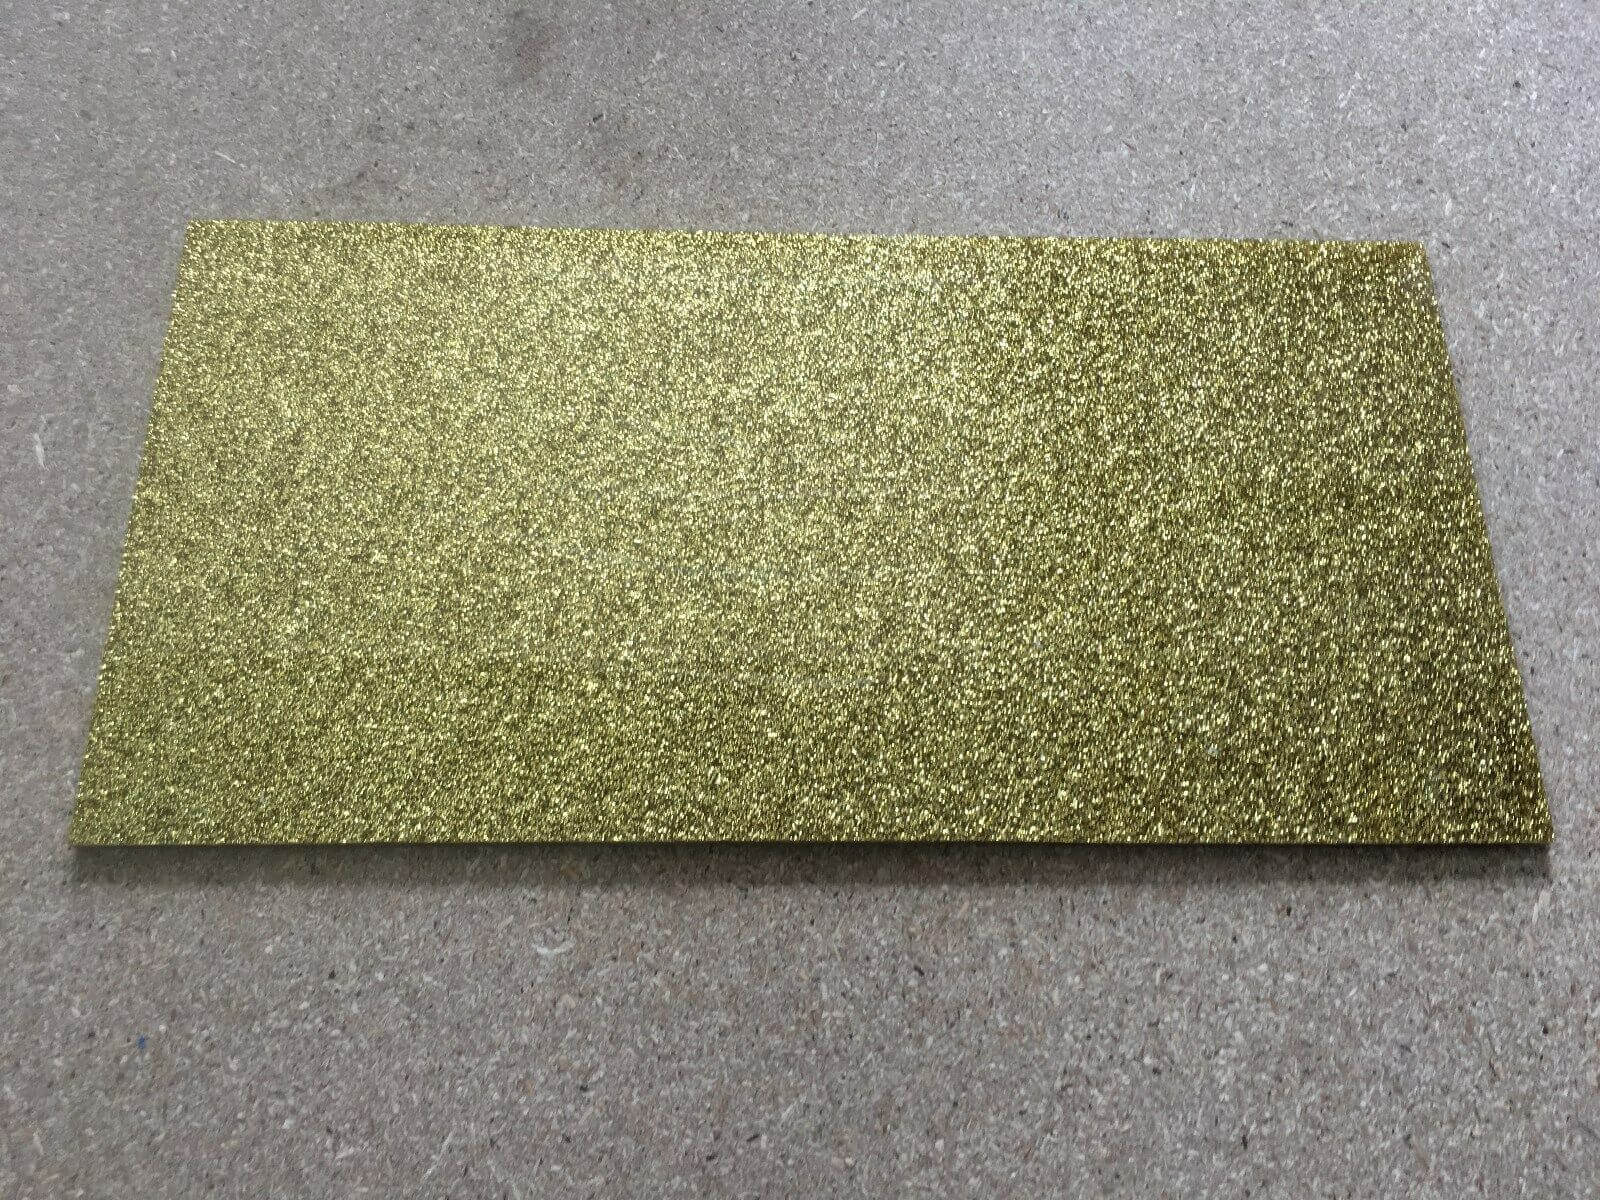 Kirinite Gold Stardust Craft Sheet 300mm x 150mm x 3mm Kirinite